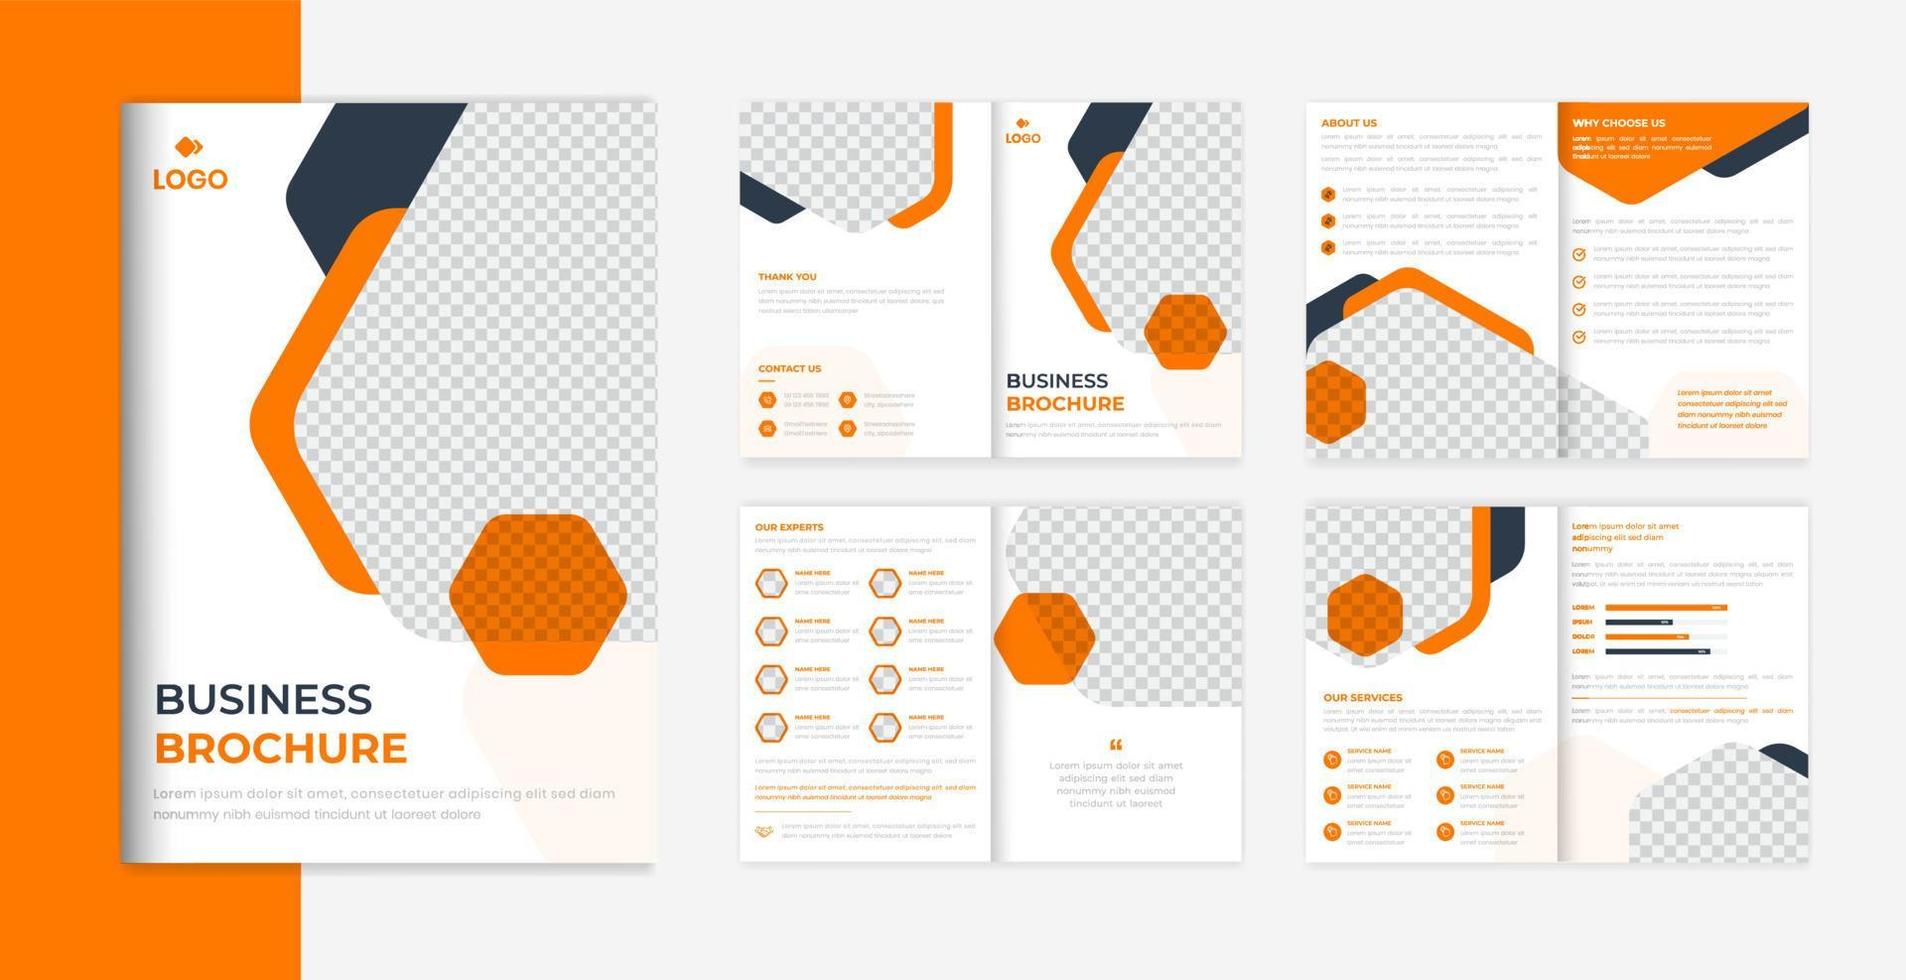 moderne zakelijke brochure ontwerpsjabloon, bedrijfsprofiel zakelijke lay-out met meerdere pagina's vector